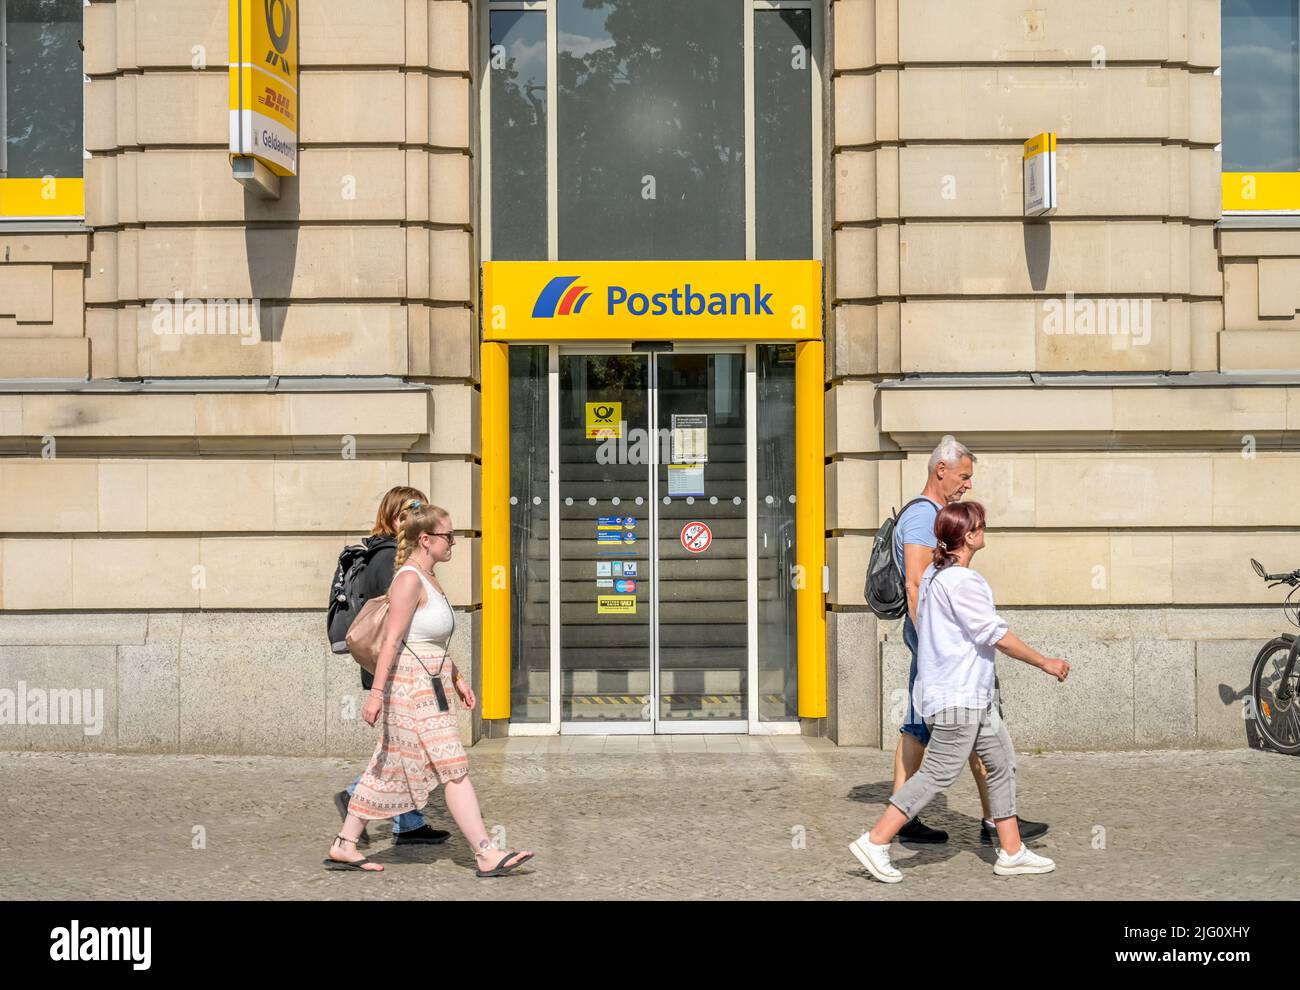 Postfiliale Postbank, Platz der Einheit, Potsdam, Brandenburg, Deutschland Stock Photo